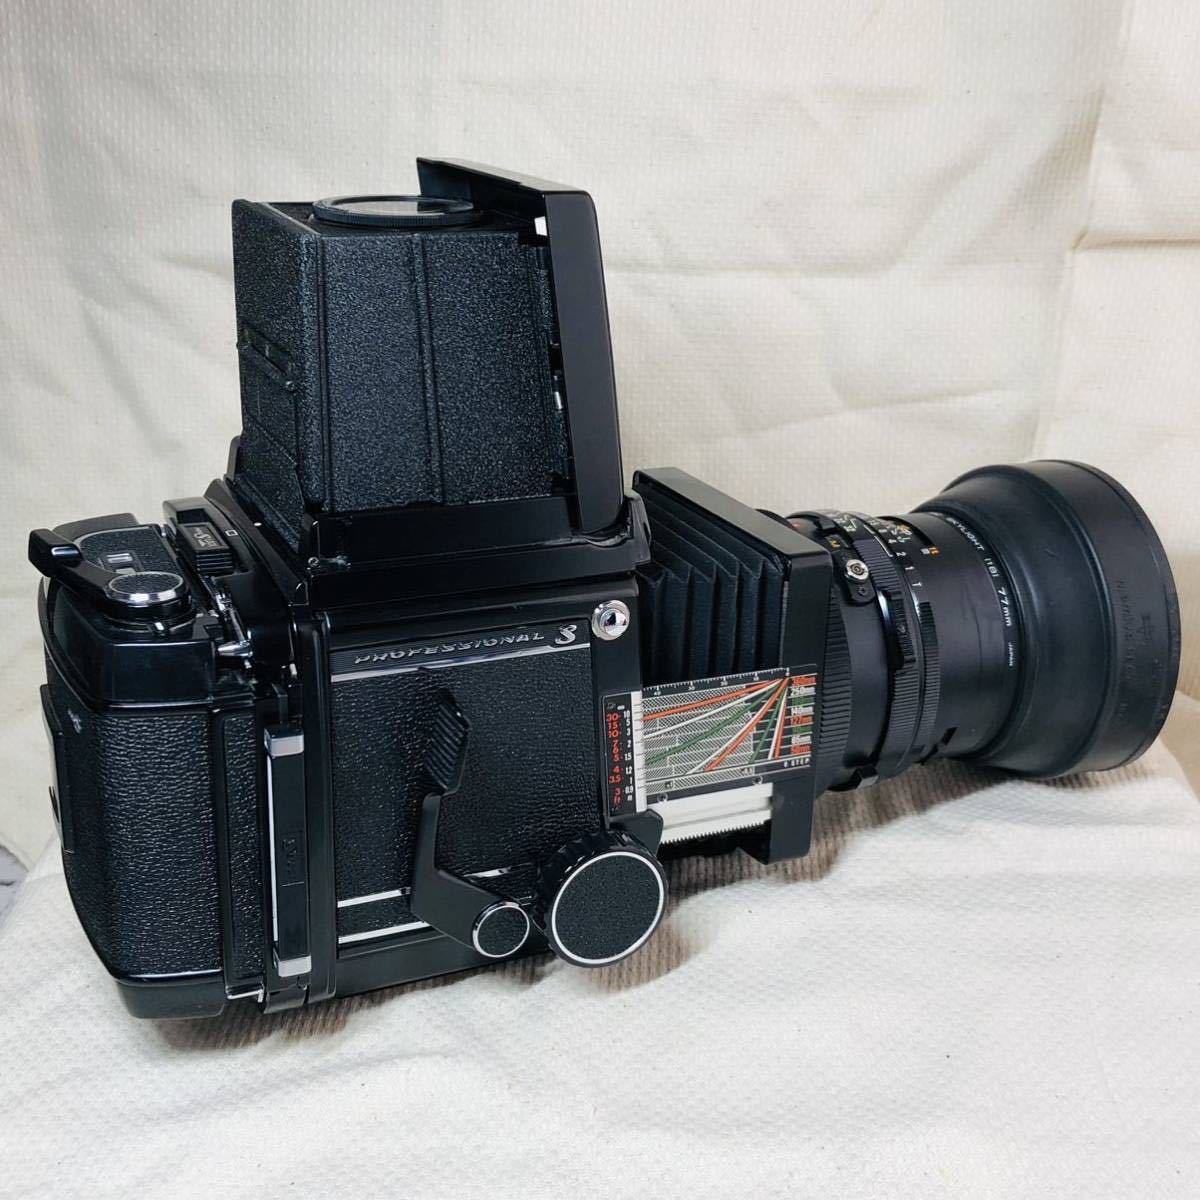 Mamiya マミヤ RB67 プロS/ レンズSEKOR C1:3.8 f=90mm / ファインダー/ポラロイドバック /ストラップ×2 フィルムカメラ 動作未確認 現状_画像3